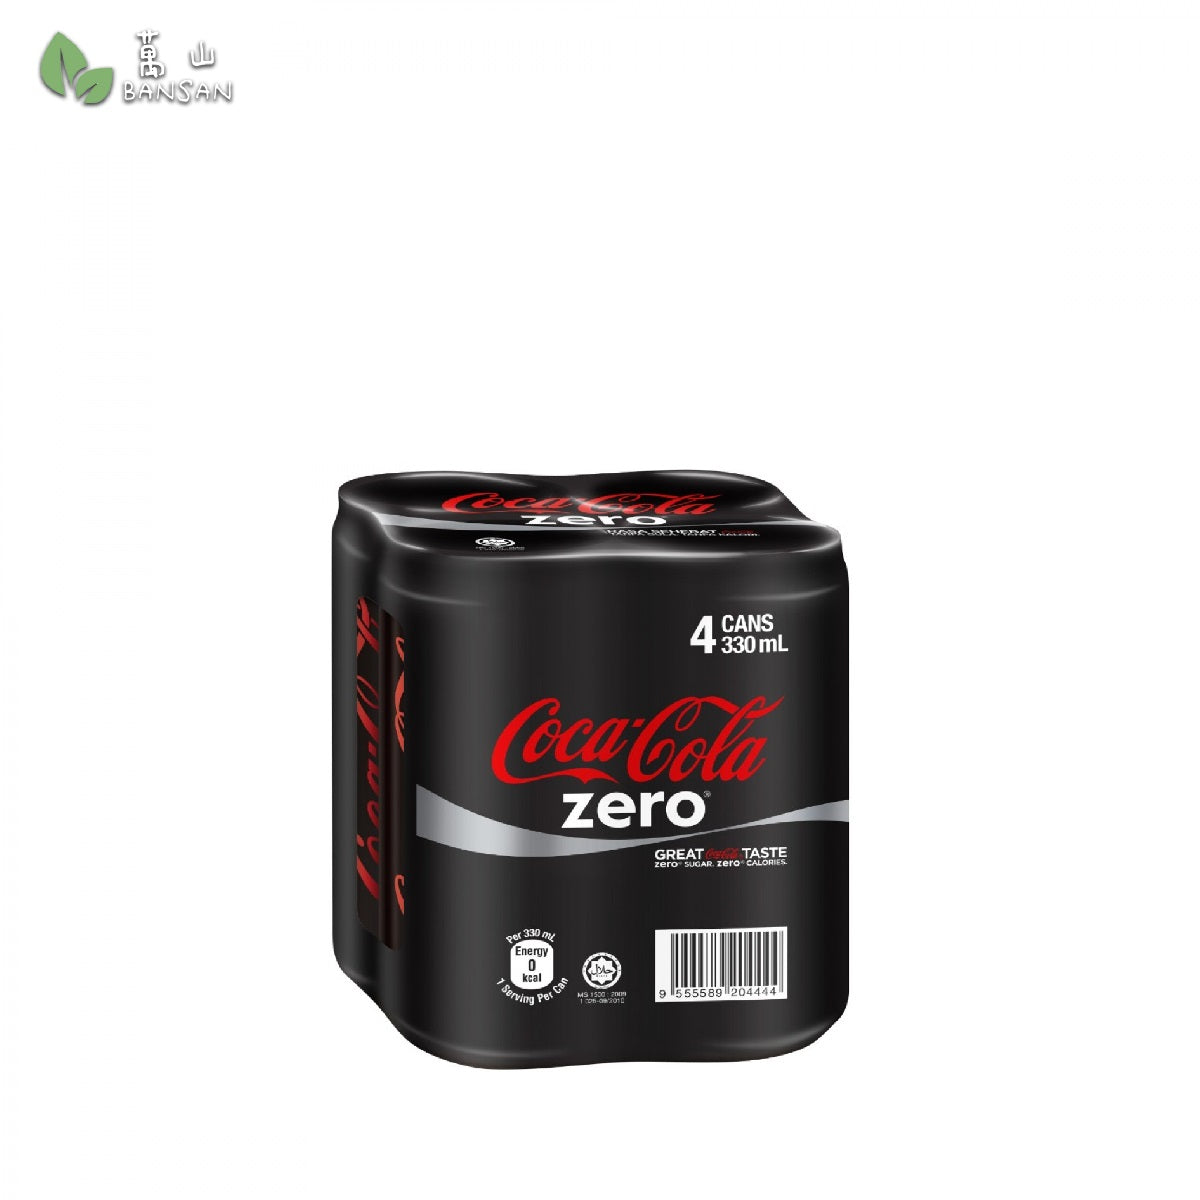 Coca-cola Zero (4 Cans) (320ml) - Bansan Penang